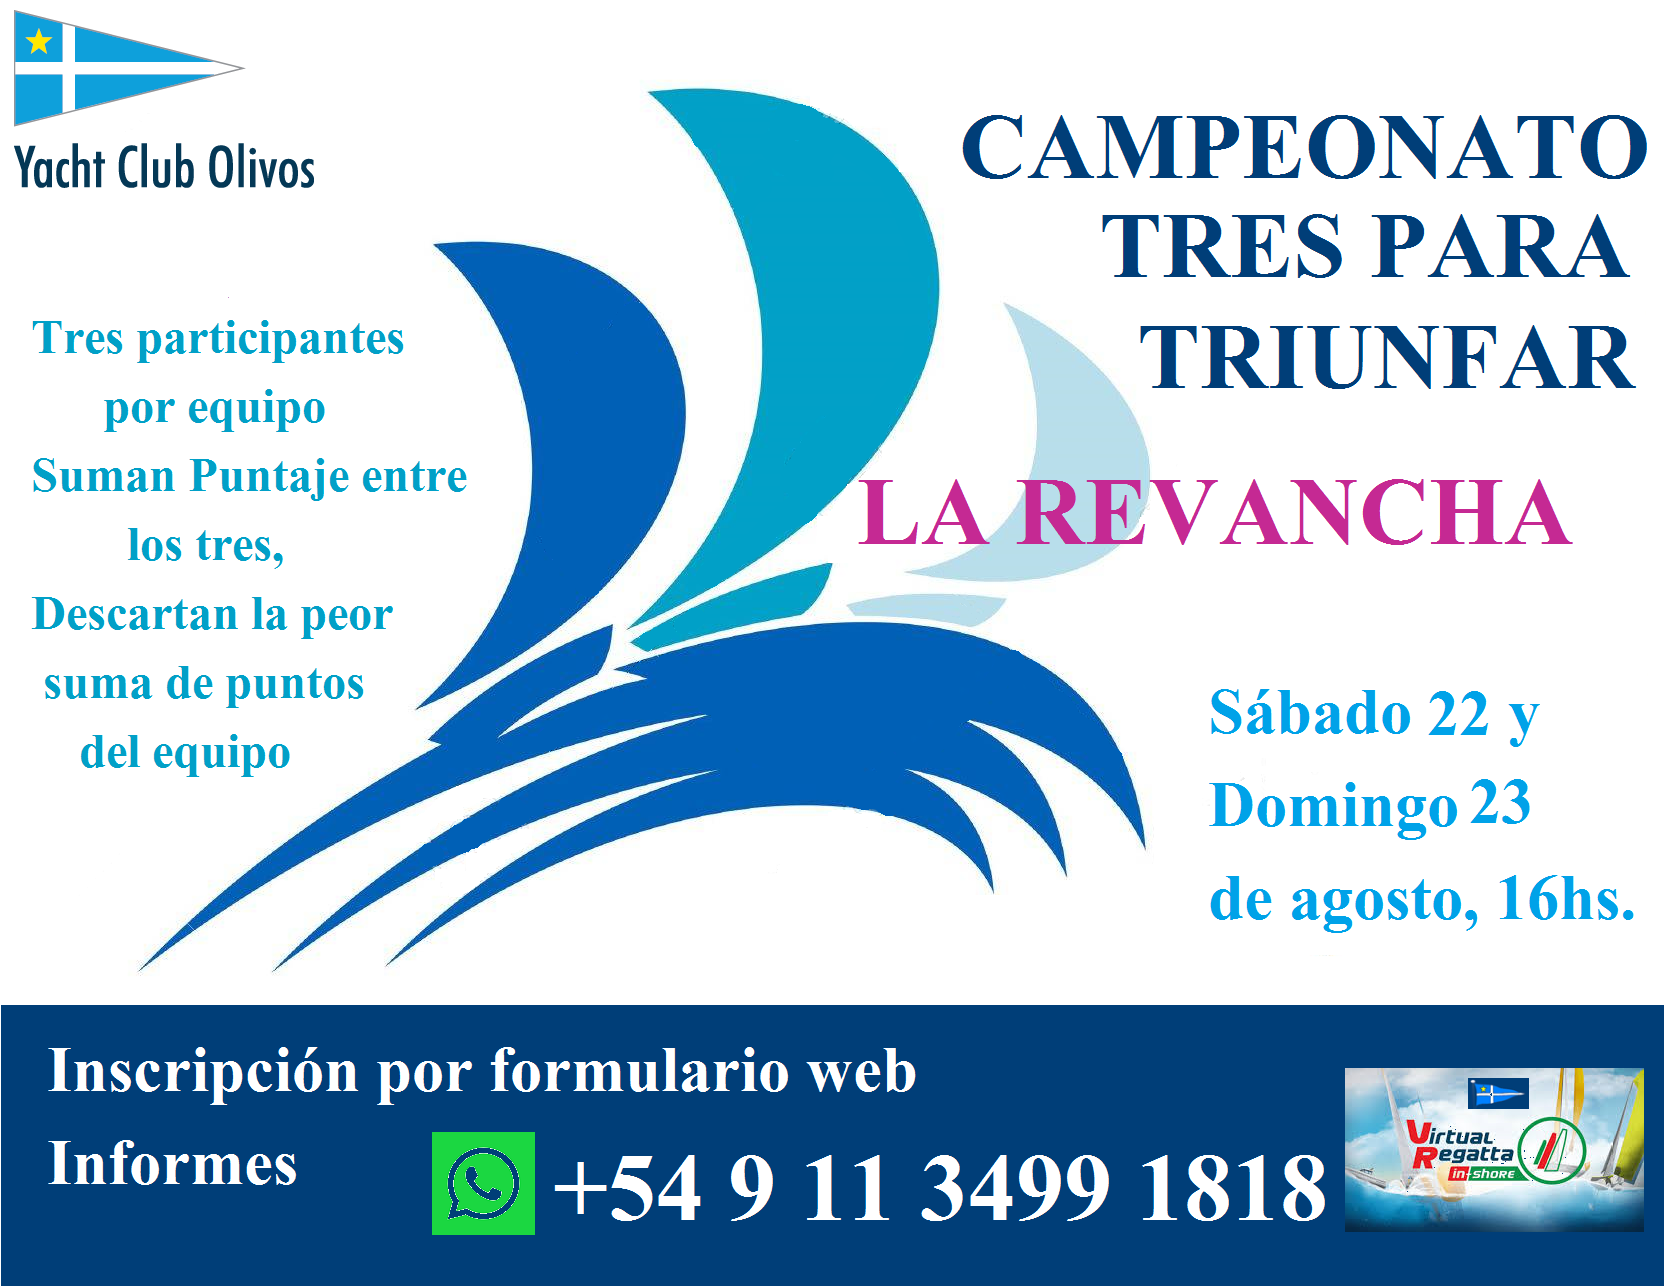 Campeonato Tres Para Triunfar, La Revancha